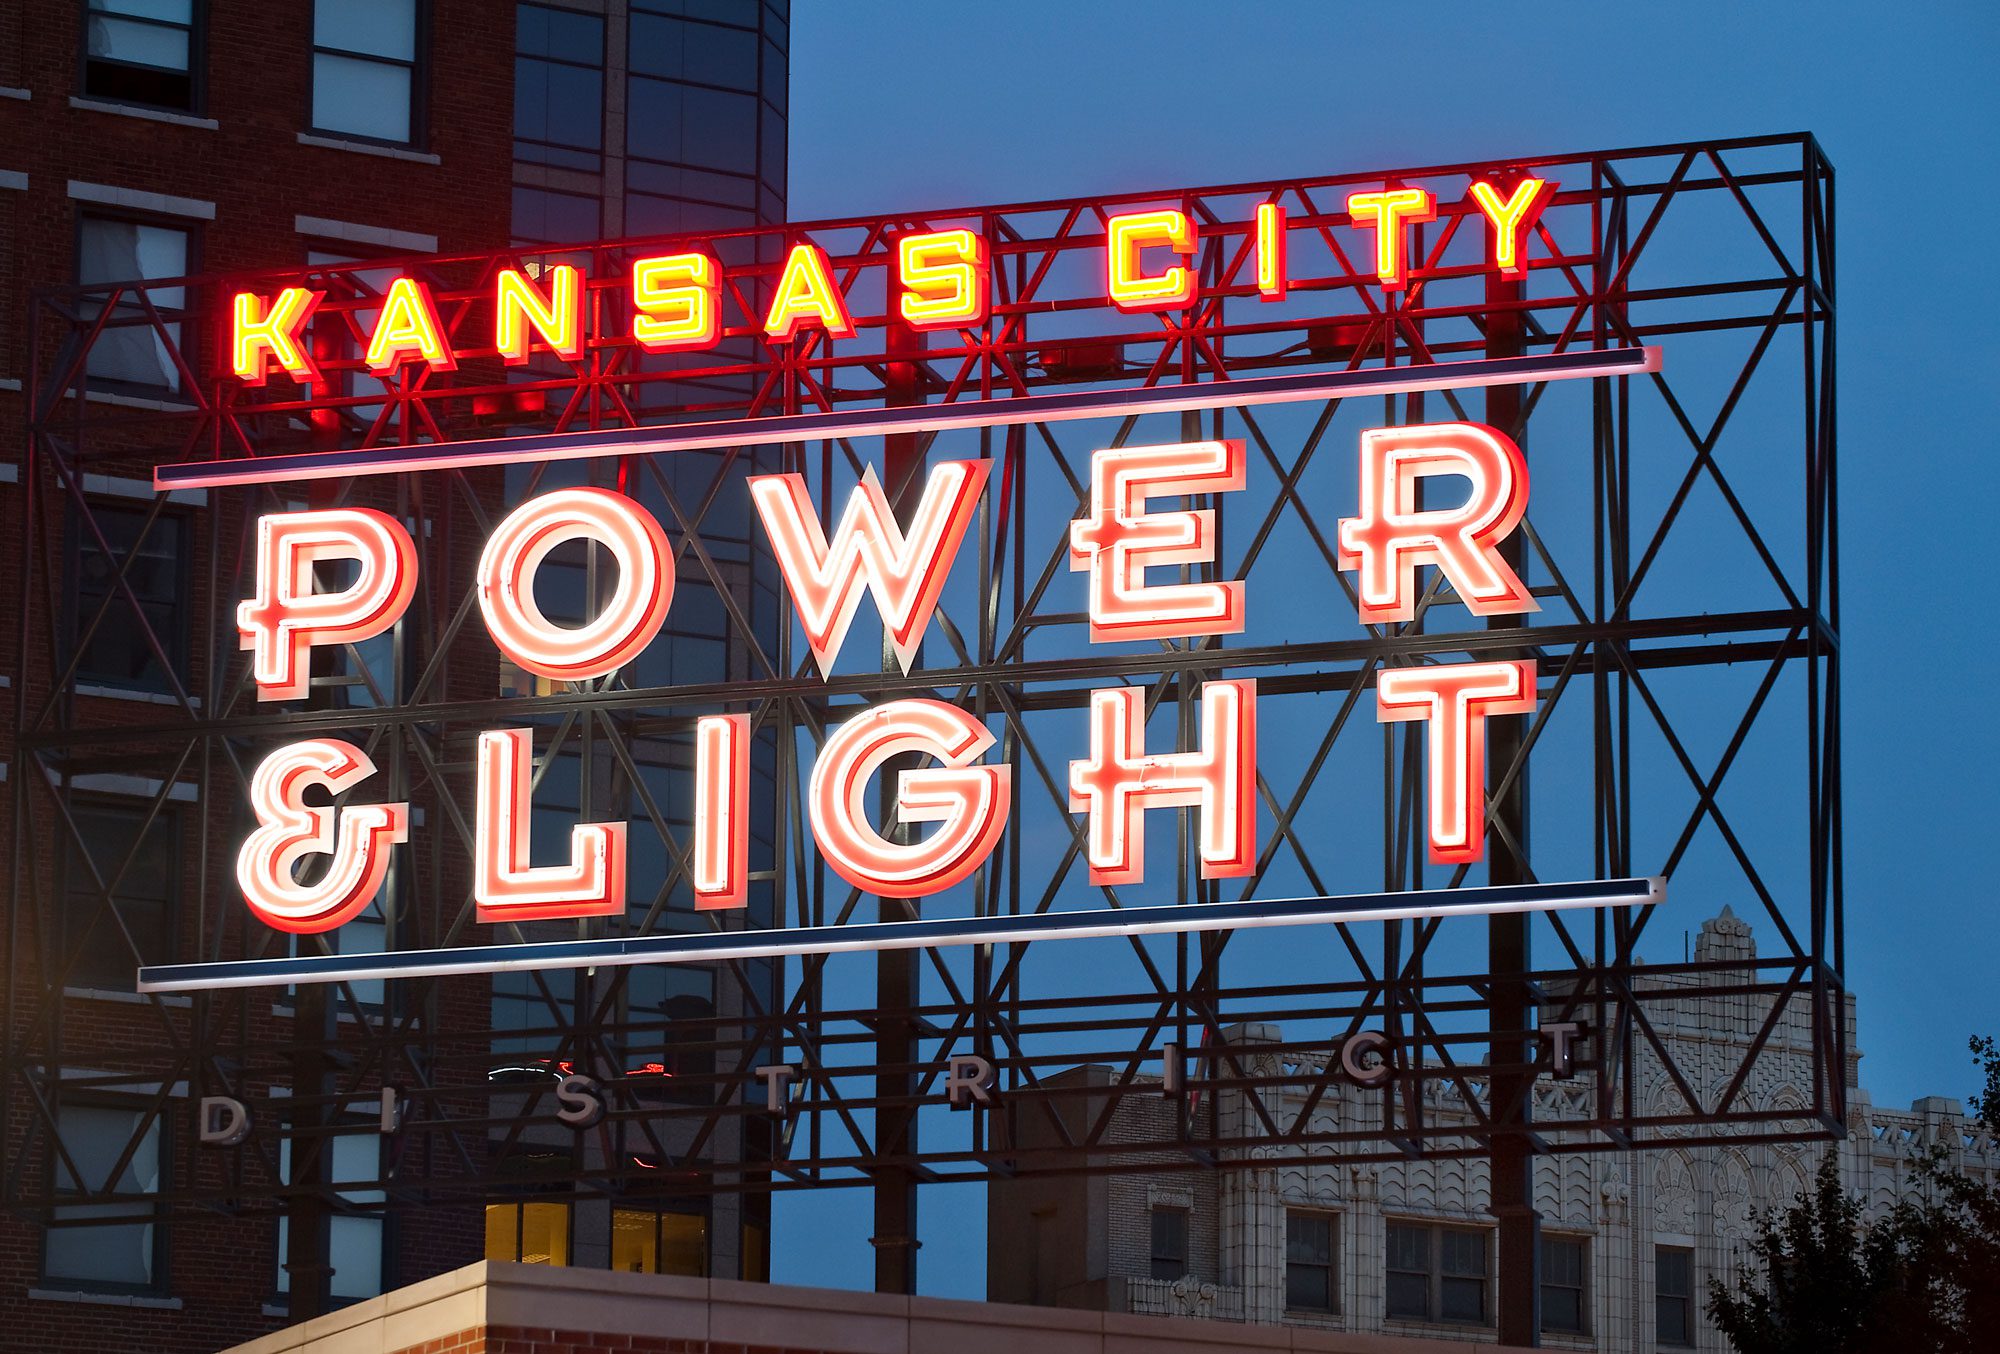 Kansas City Power And Light District Spd Selbert Perkins Design